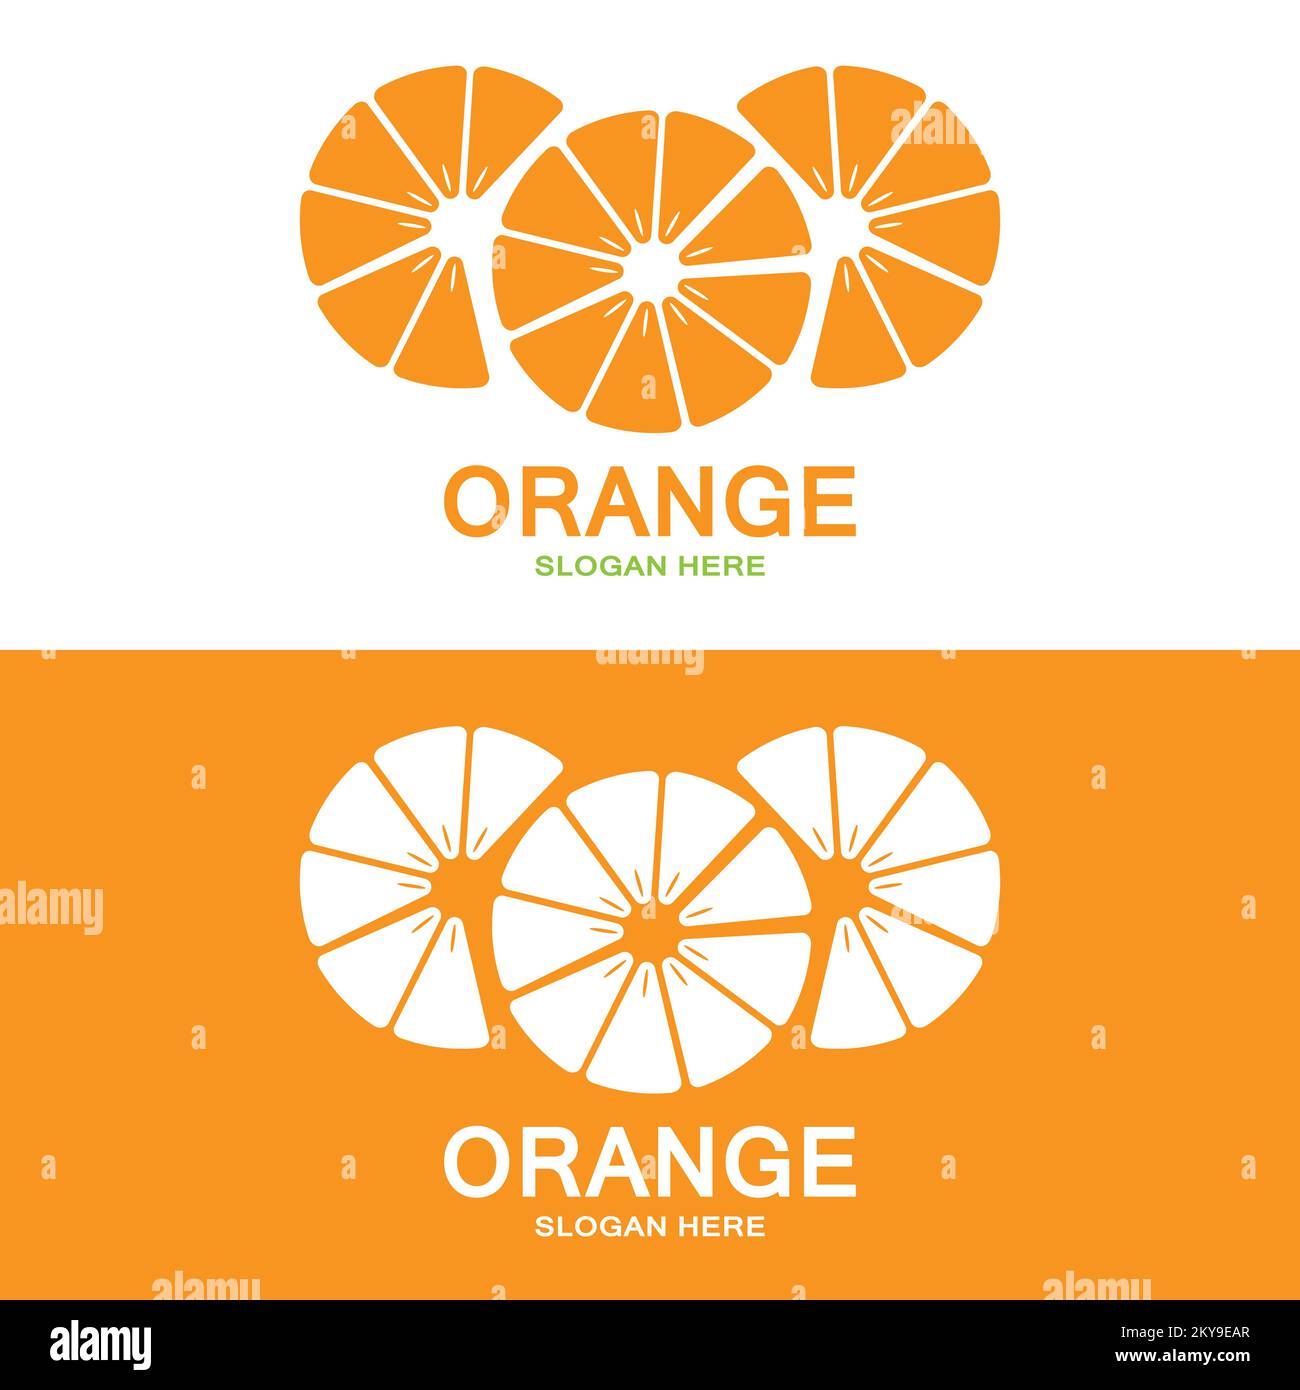 Logo orange, vecteur de fruits frais, design adapté à la boutique de fruits, modèle de bannière, icône de fruits orange Illustration de Vecteur